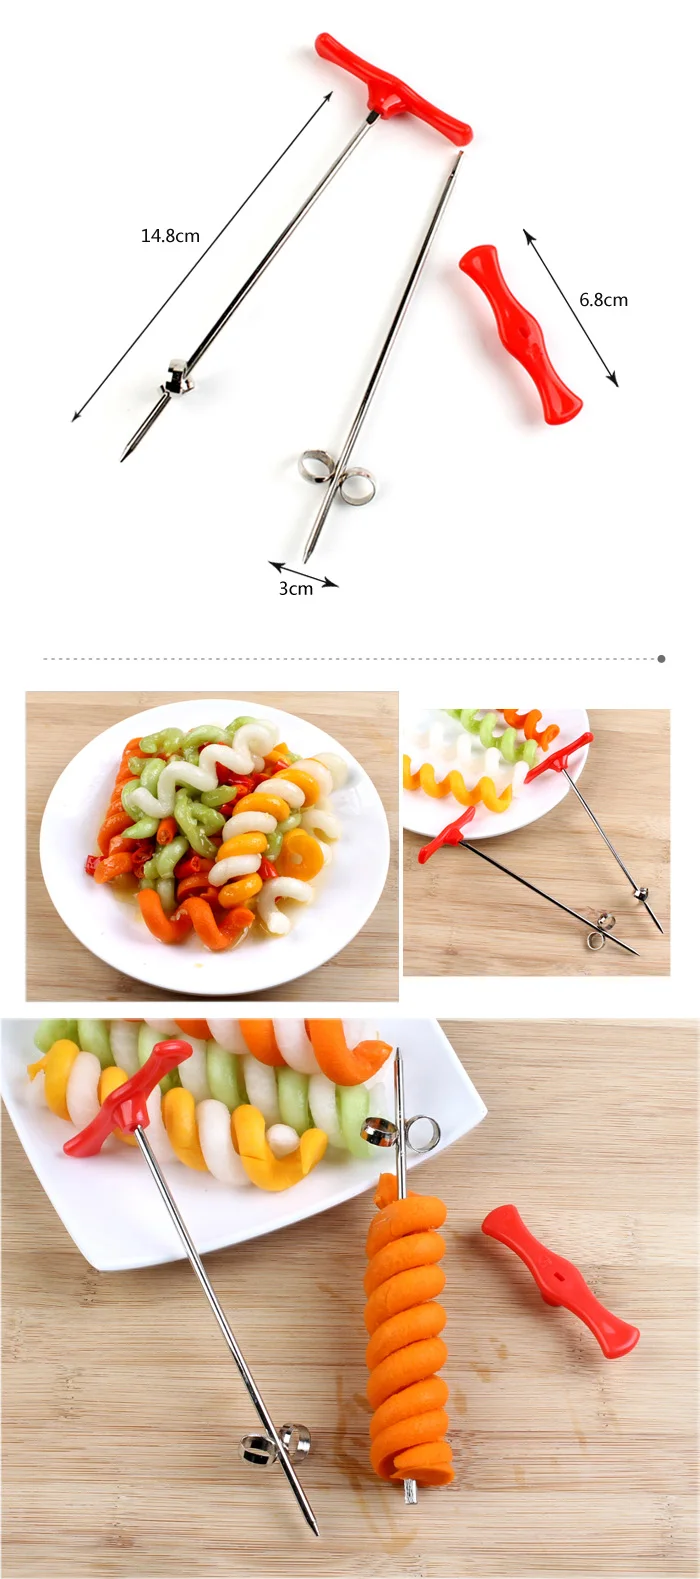 Овощной спиральный нож резной инструмент картофель Морковь Огурец салат измельчитель ручной спиральный винтовой стержень для нарезки резак спирализатор